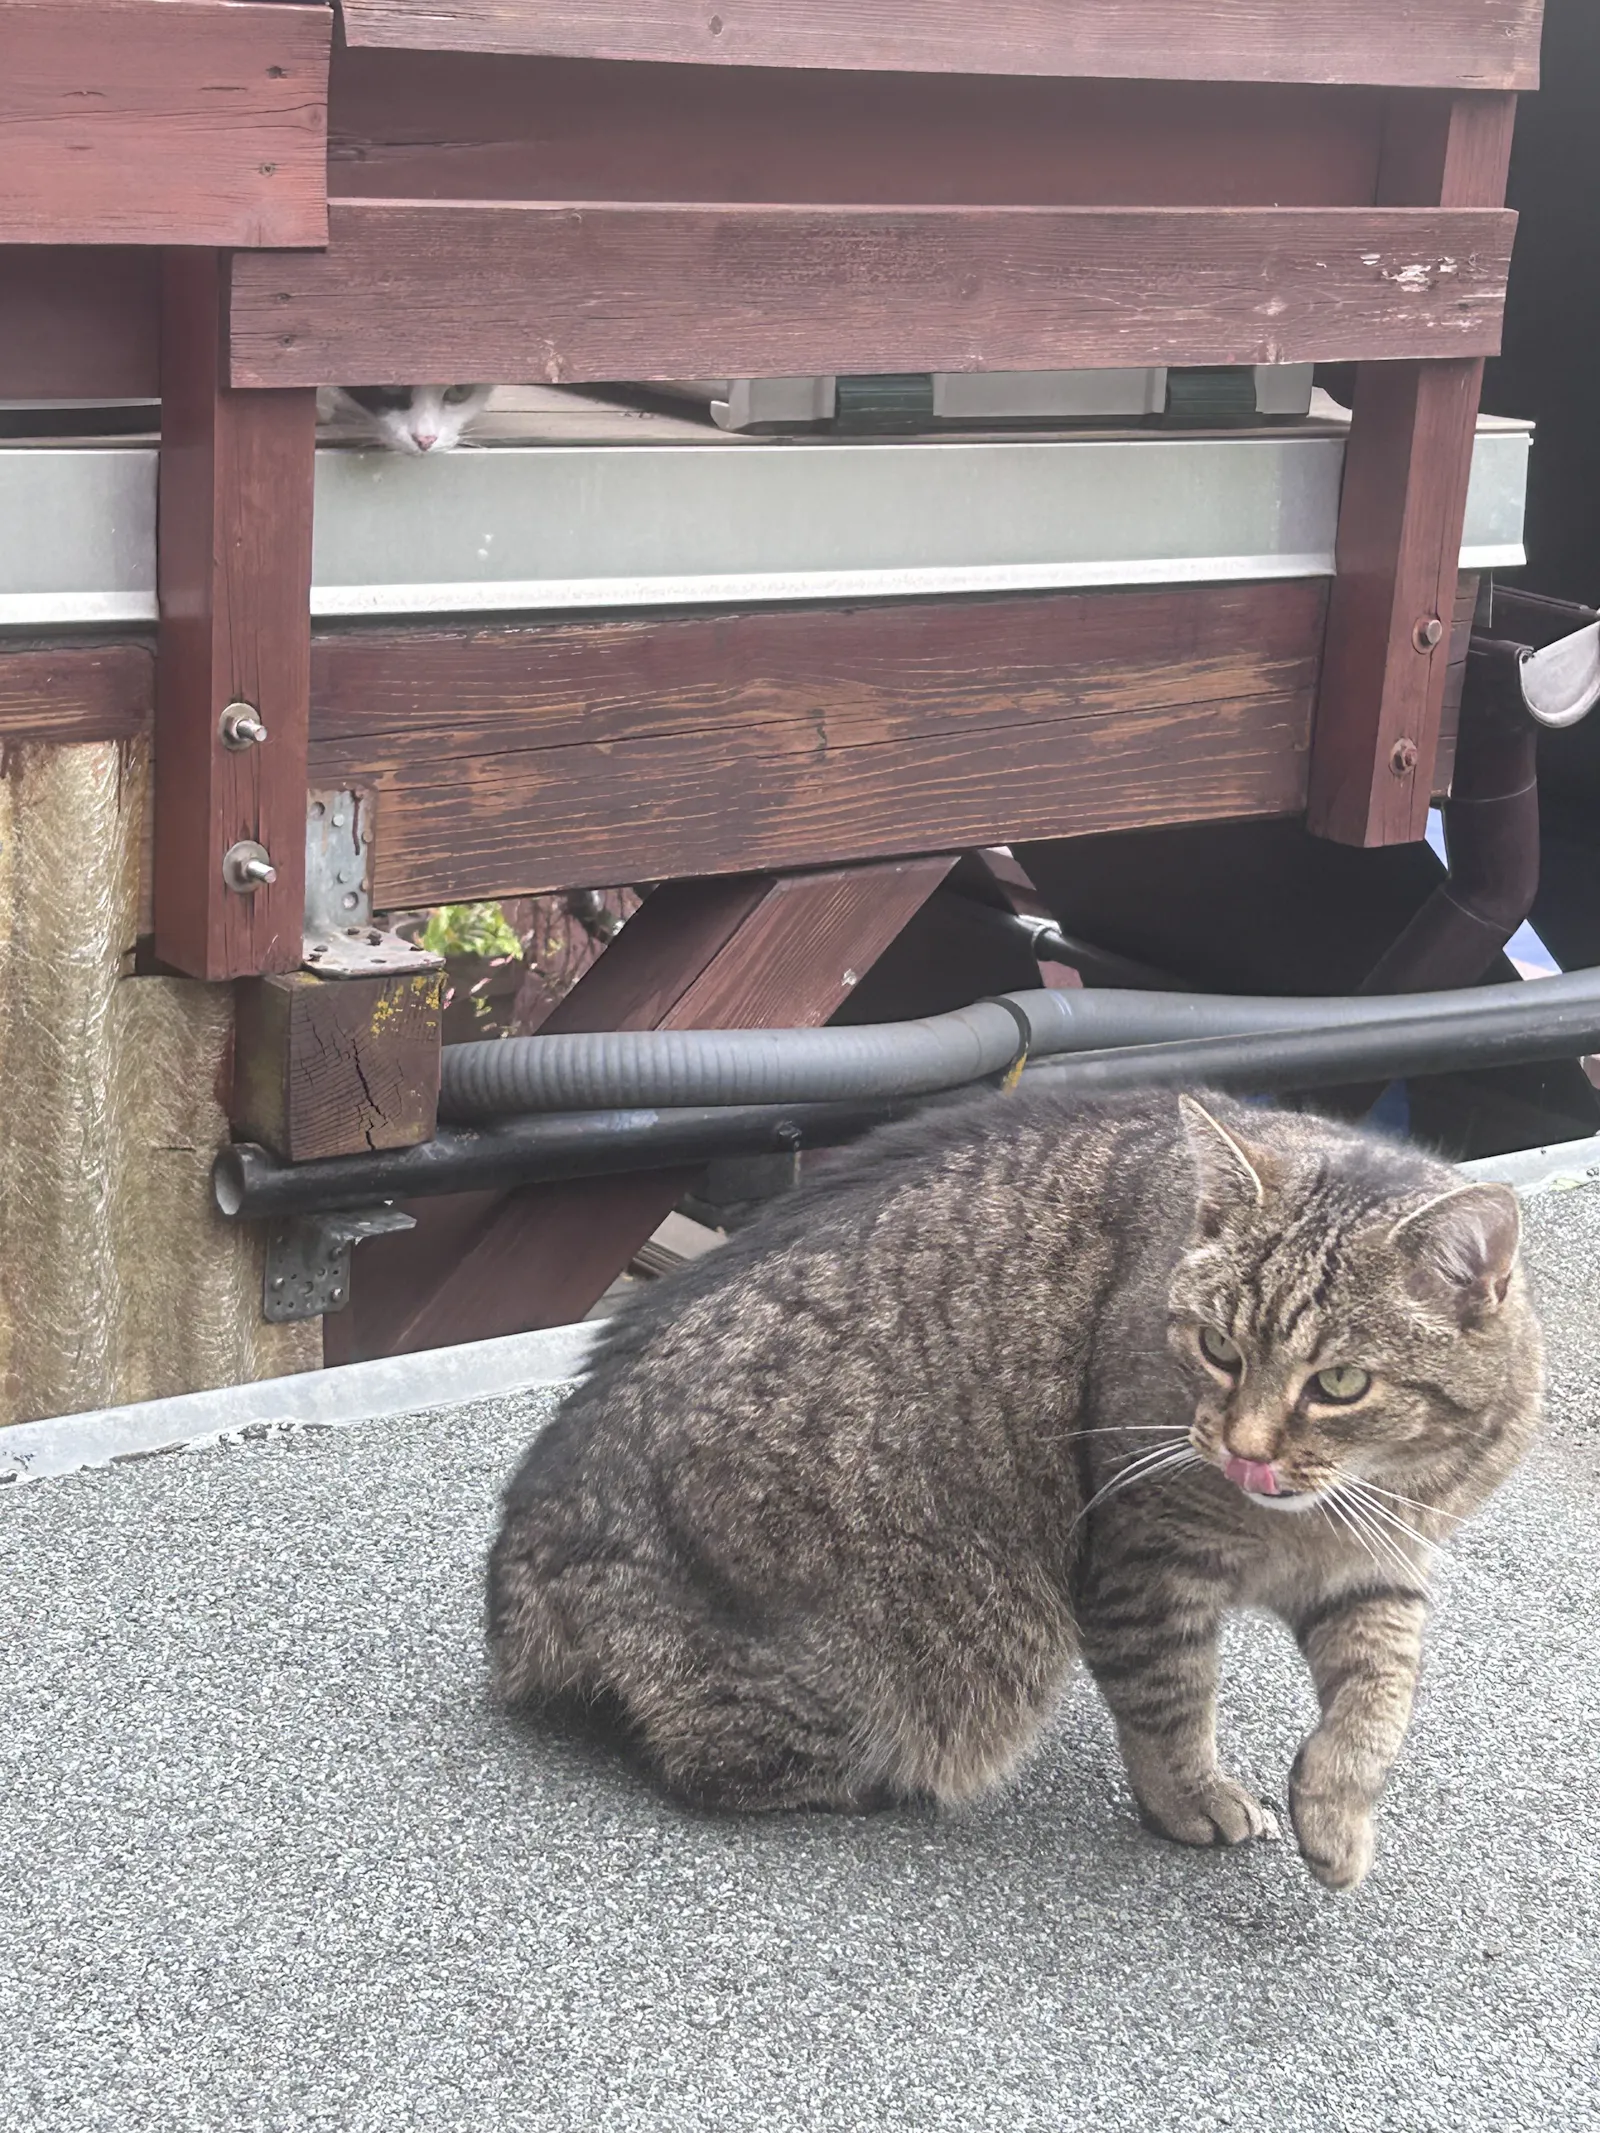 Sich frei bewegende, herrschaftlich blickende Katze, im Hintergrund sieht die angeleinte Katze vom vorigen Bild durch einen Schlitz in der Holztrennwand von der Nachbarterrasse rüber